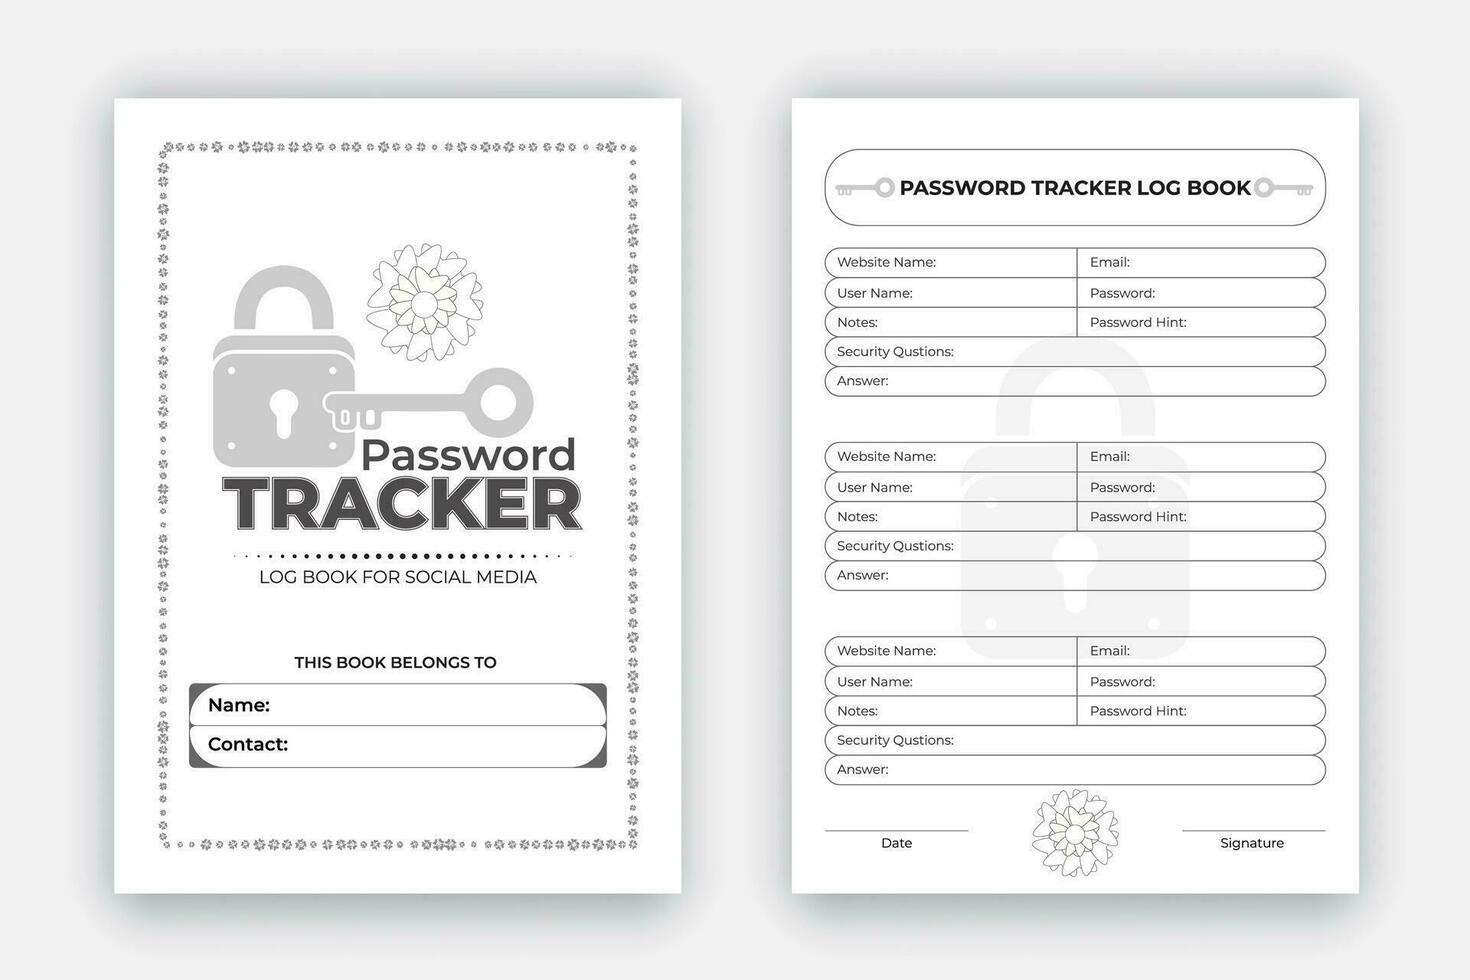 wachtwoord tracker log boek ontwerp sjabloon, persoonlijk en website gegevens formaat notitieboekje, herinnering logboek interieur met zwart wit papier vector